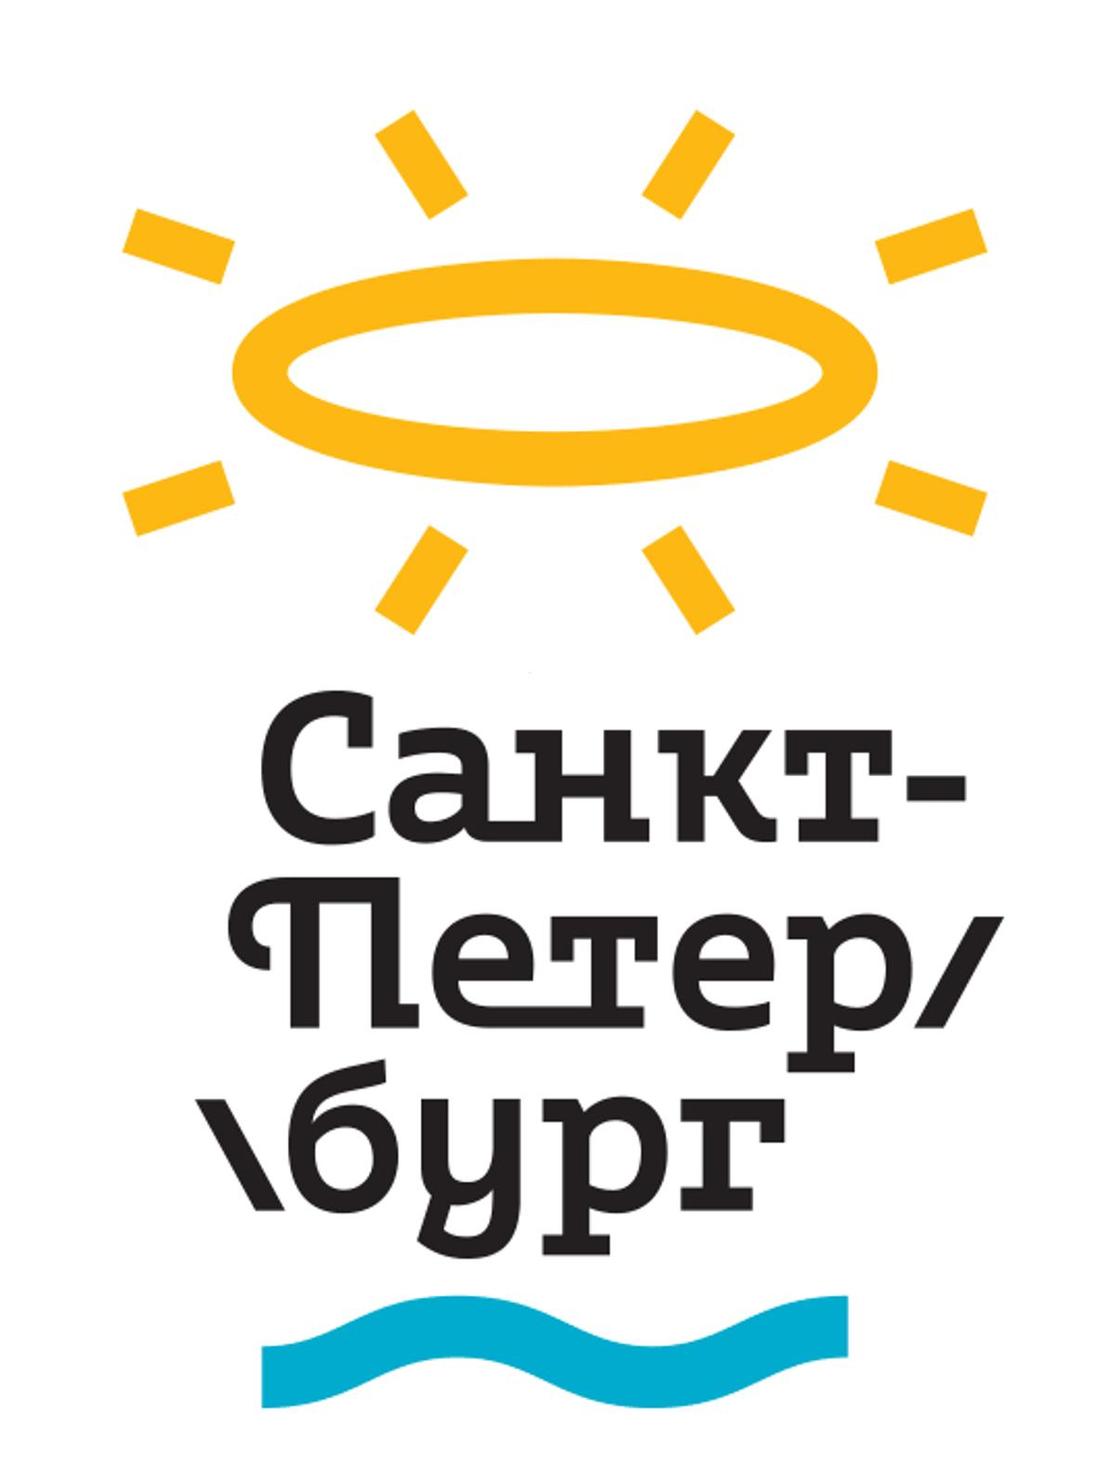 Пользователи Сети переделали новый логотип Петербурга за 42 млн тенге под другие города (фото)